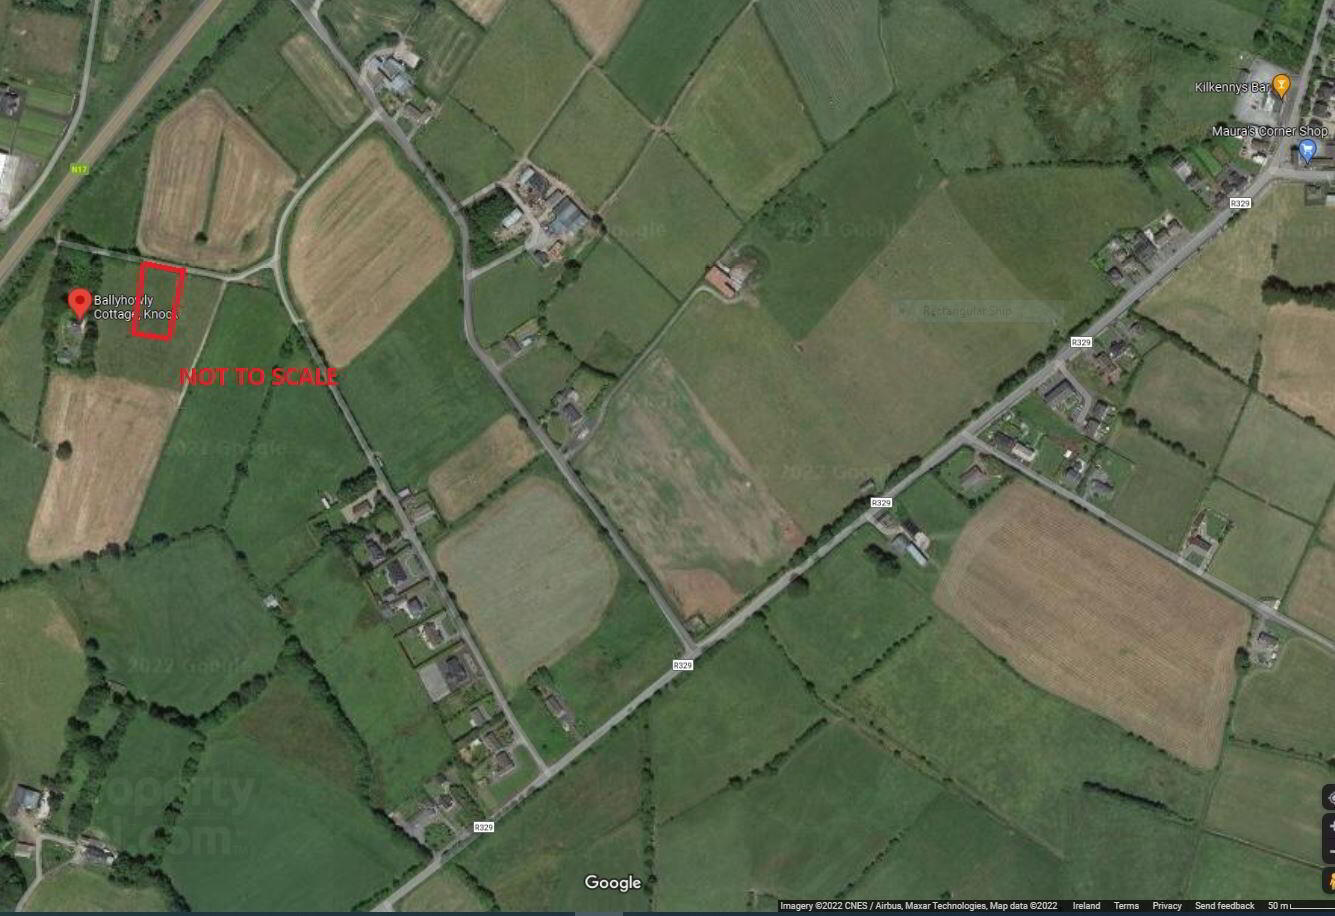 Circa, 0.75 Acre Site At Ballyhowley